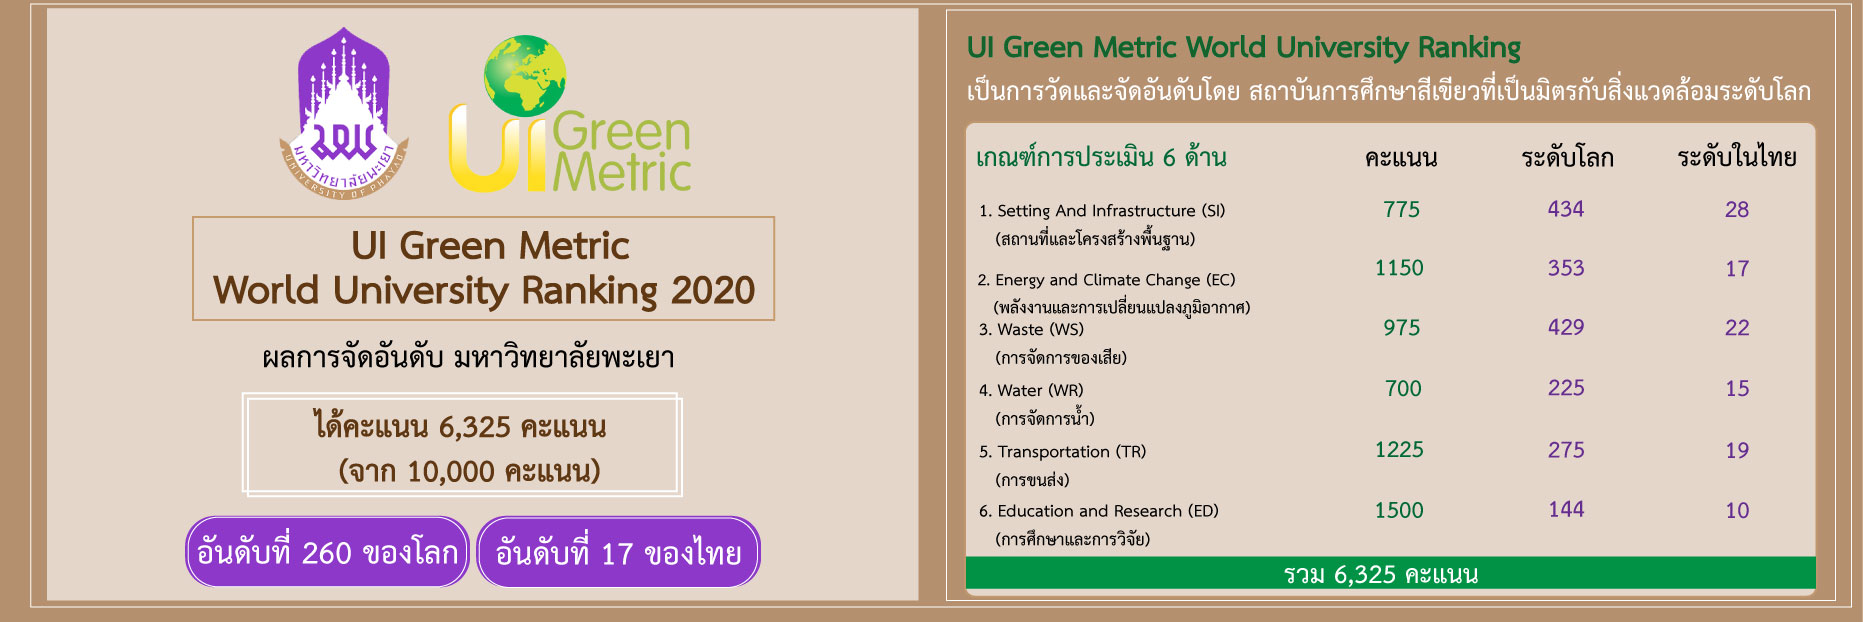 การจัดอันดับมหาวิทยาลัยสีเขียวโลก UI Green Metric World University Ranking 2020